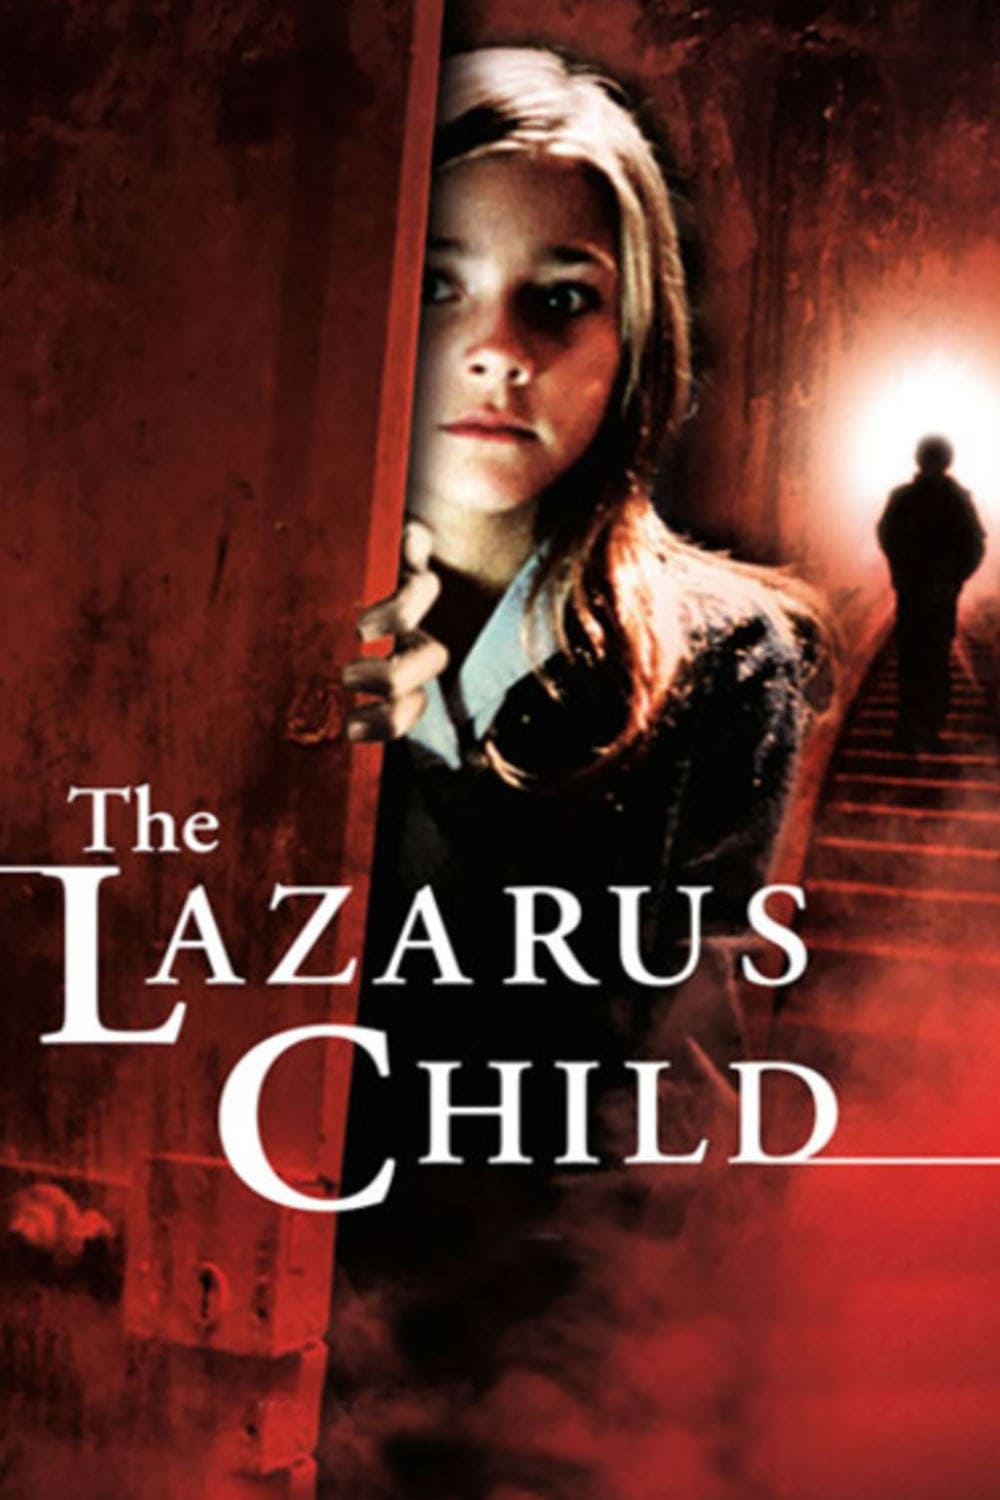 The Lazarus Child (2004)